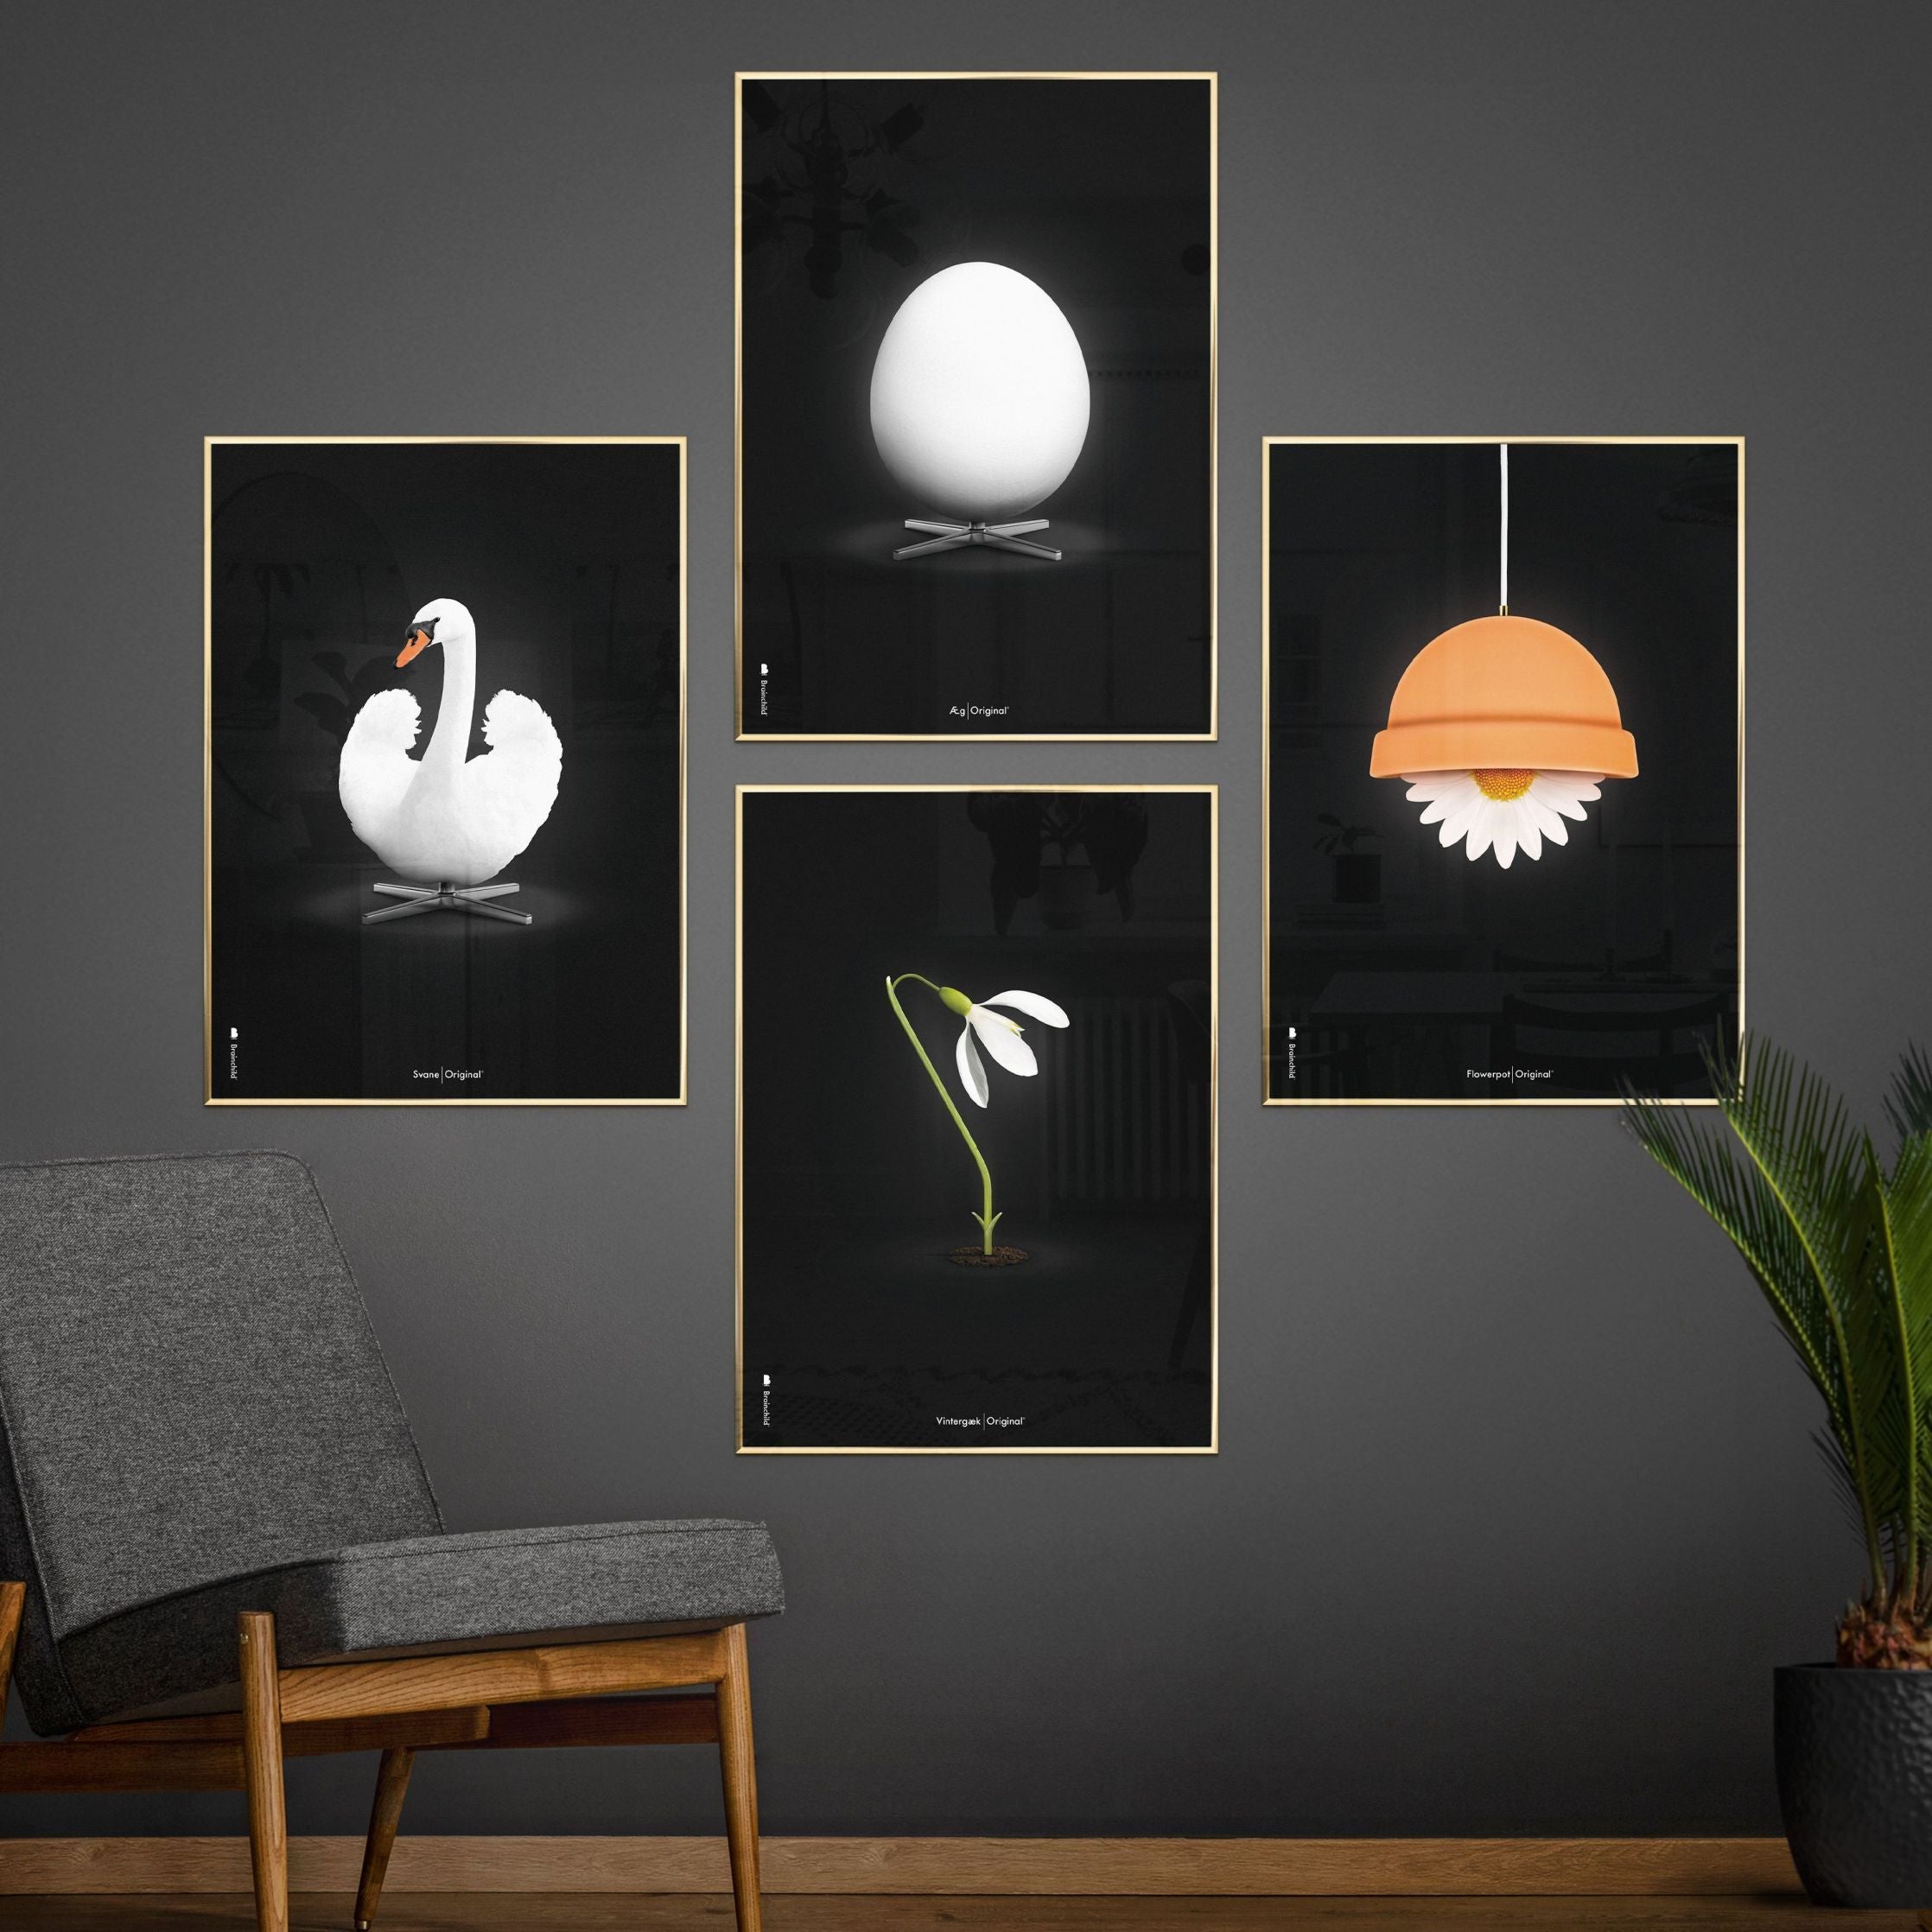 Brainchild Snowdrop Classic Poster, Dark Wood Frame A5, Black Background